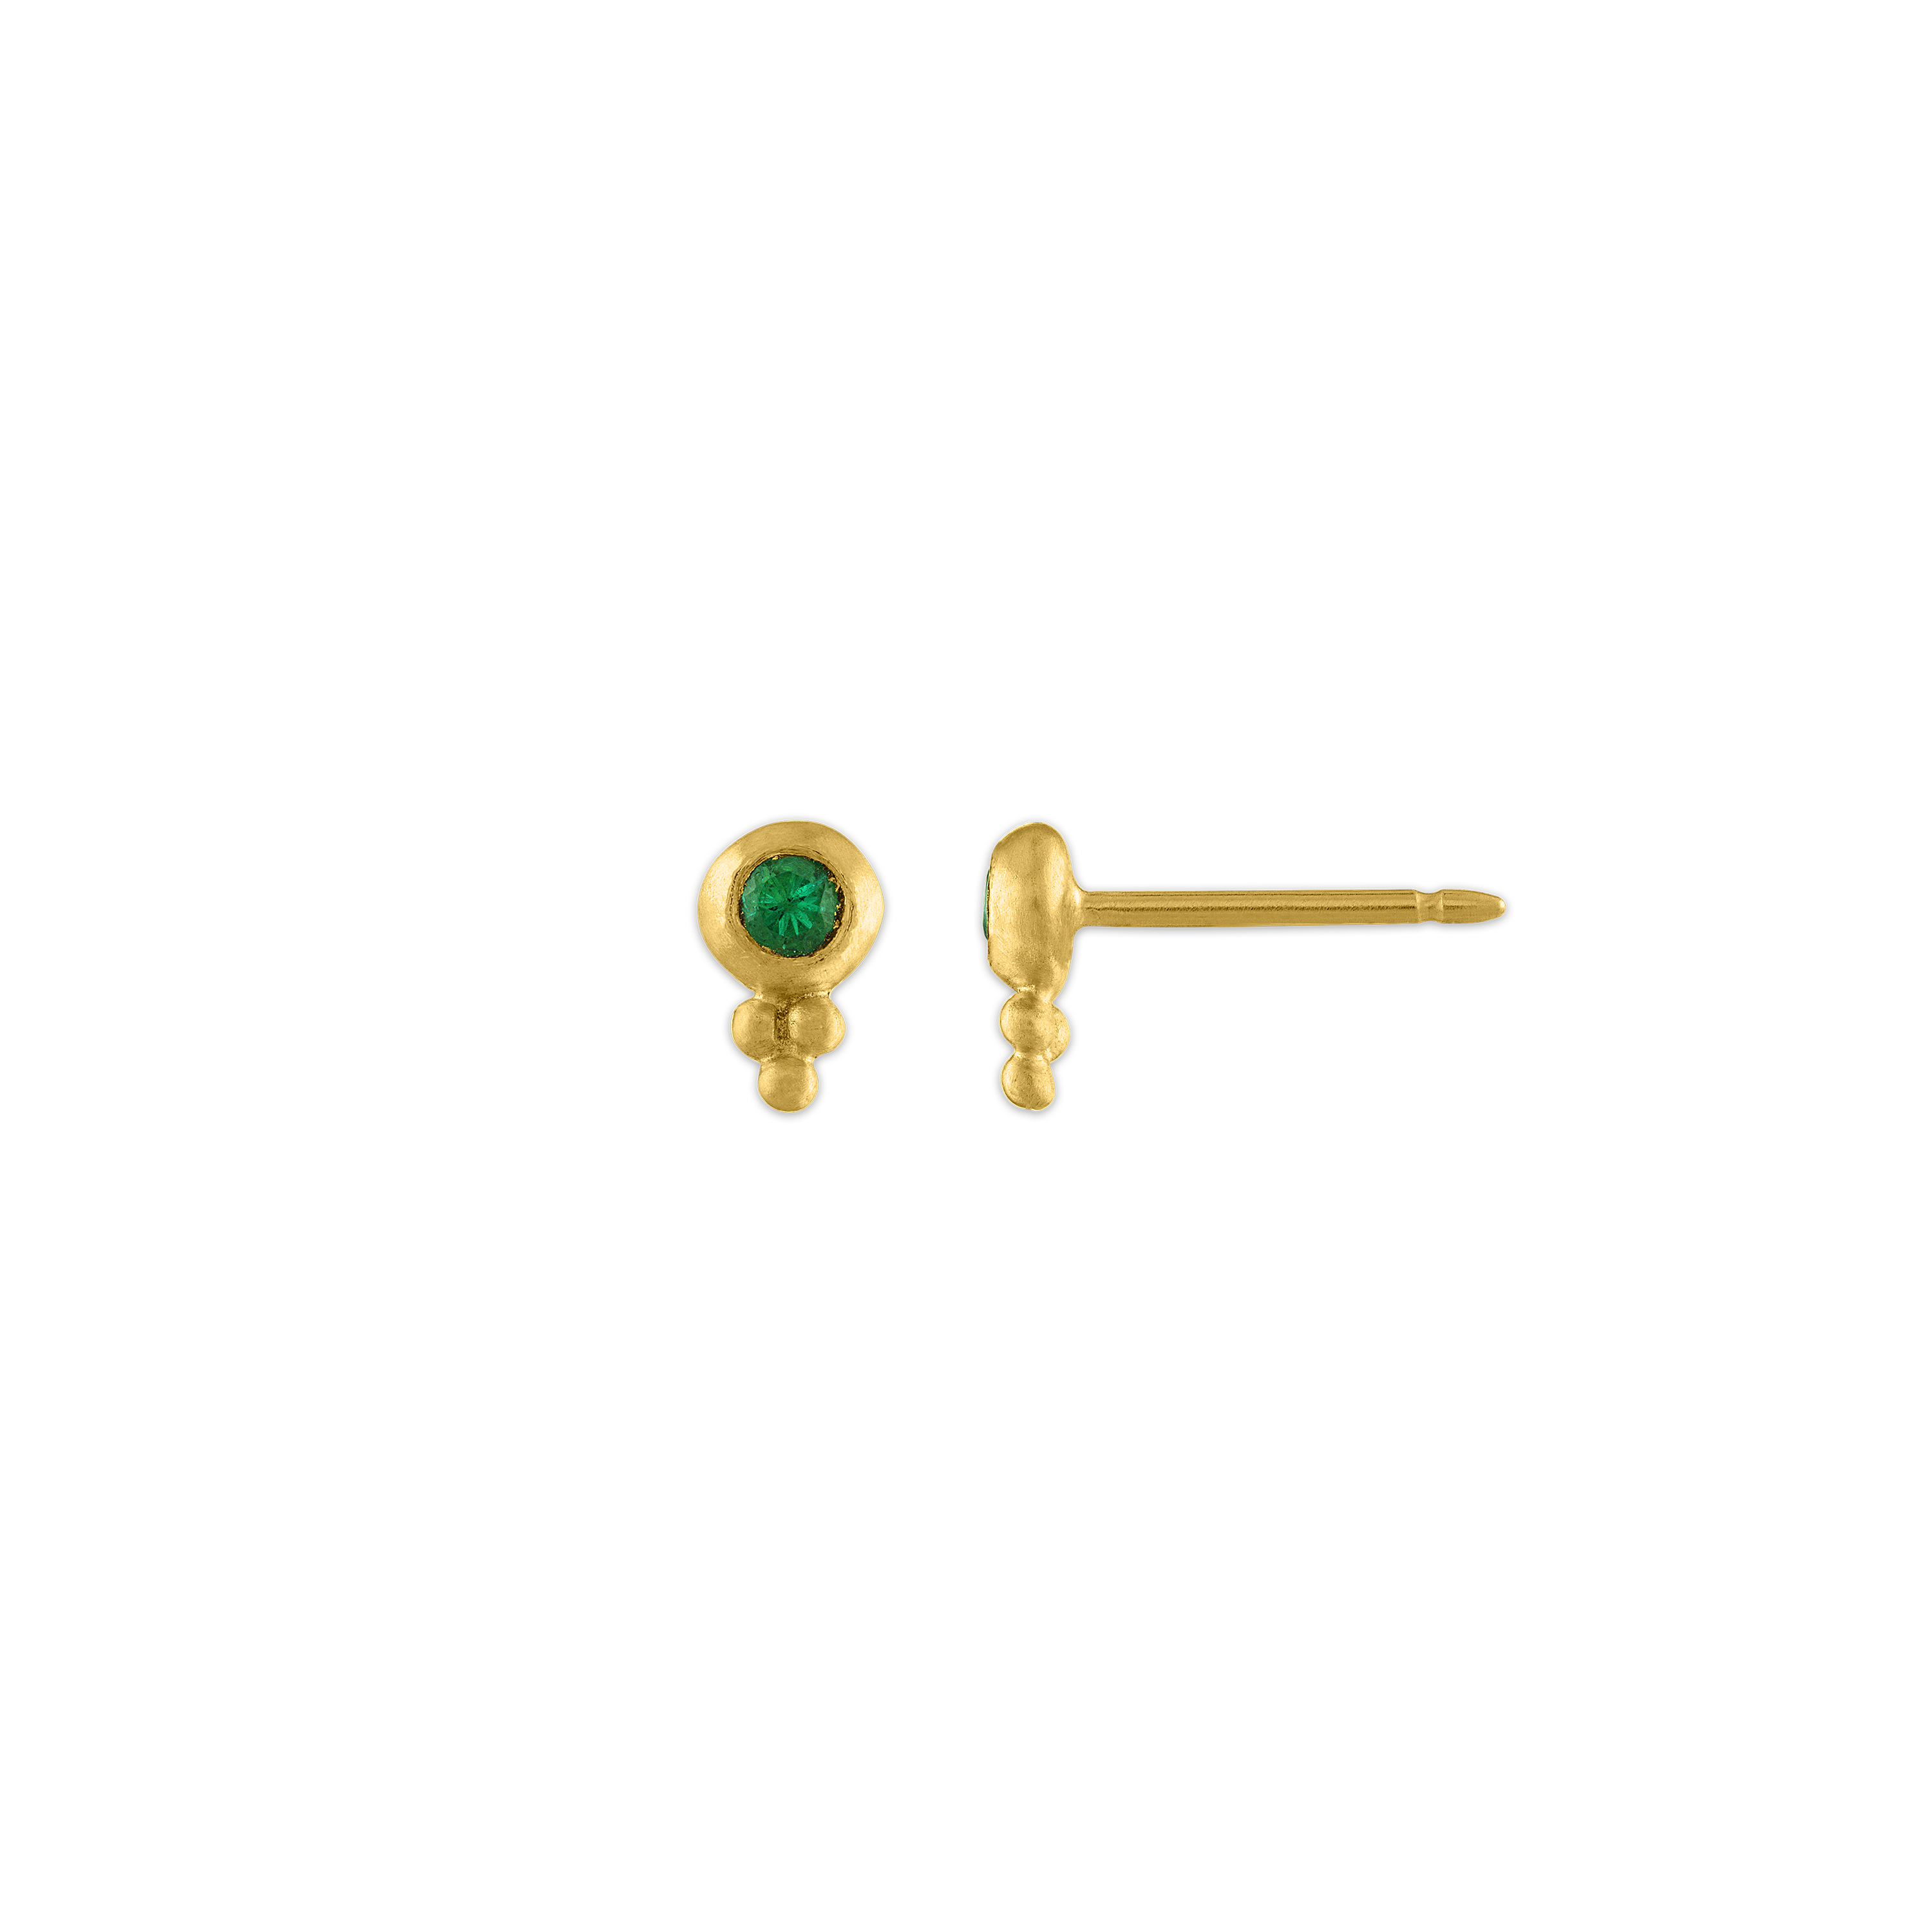 Small Emerald Lentil-Shaped Bulla Earrings